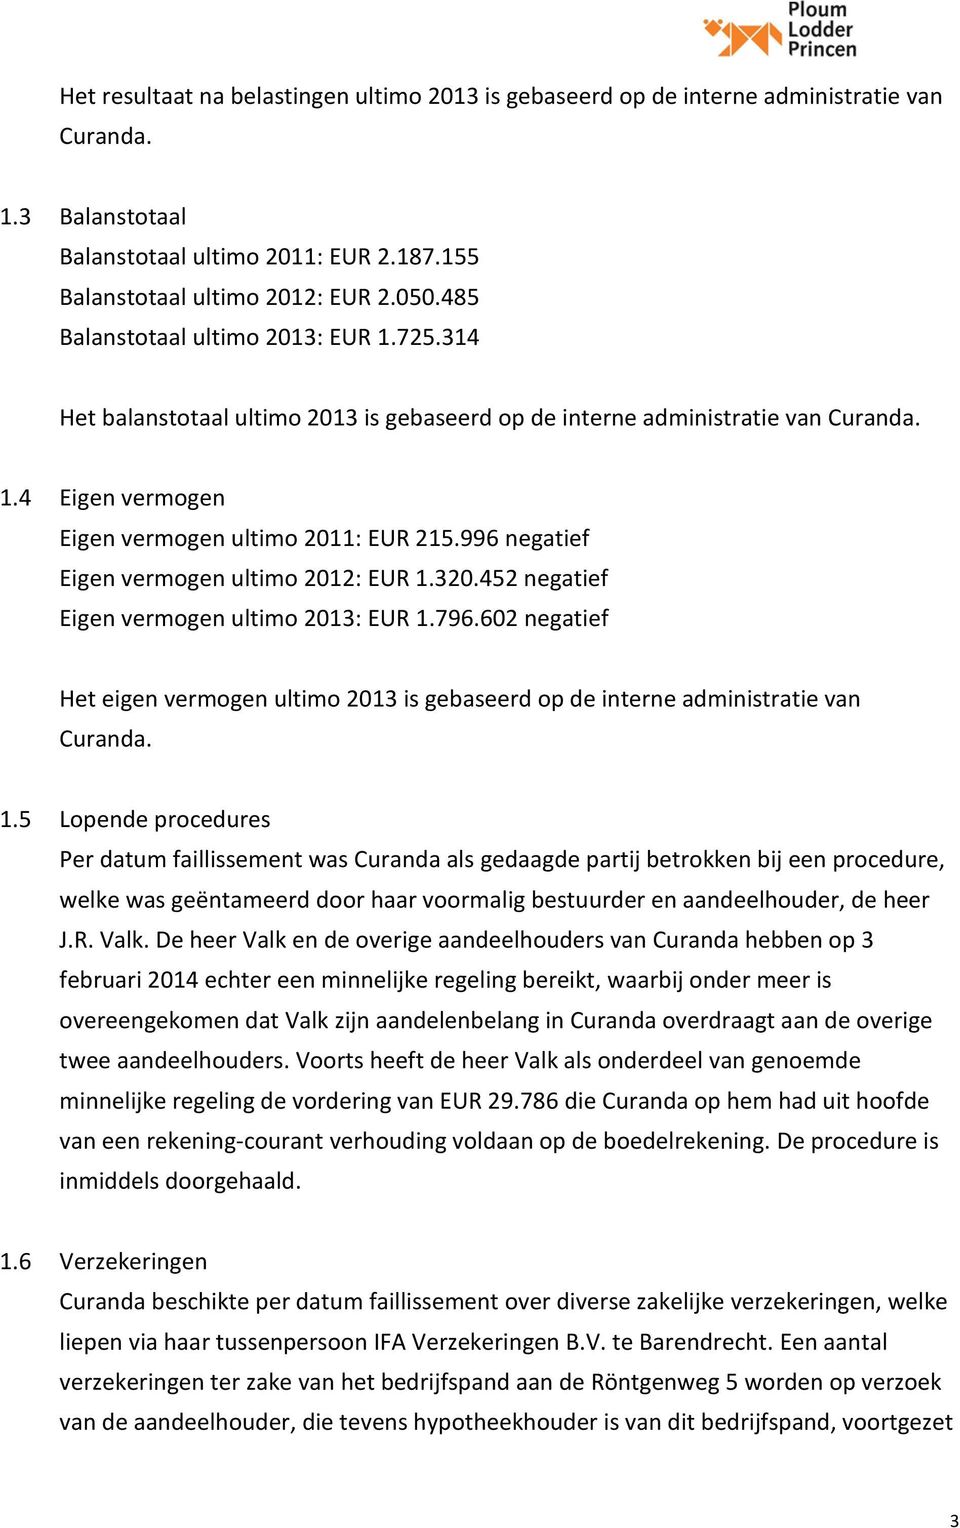 996 negatief Eigen vermogen ultimo 2012: EUR 1.320.452 negatief Eigen vermogen ultimo 2013: EUR 1.796.602 negatief Het eigen vermogen ultimo 2013 is gebaseerd op de interne administratie van Curanda.